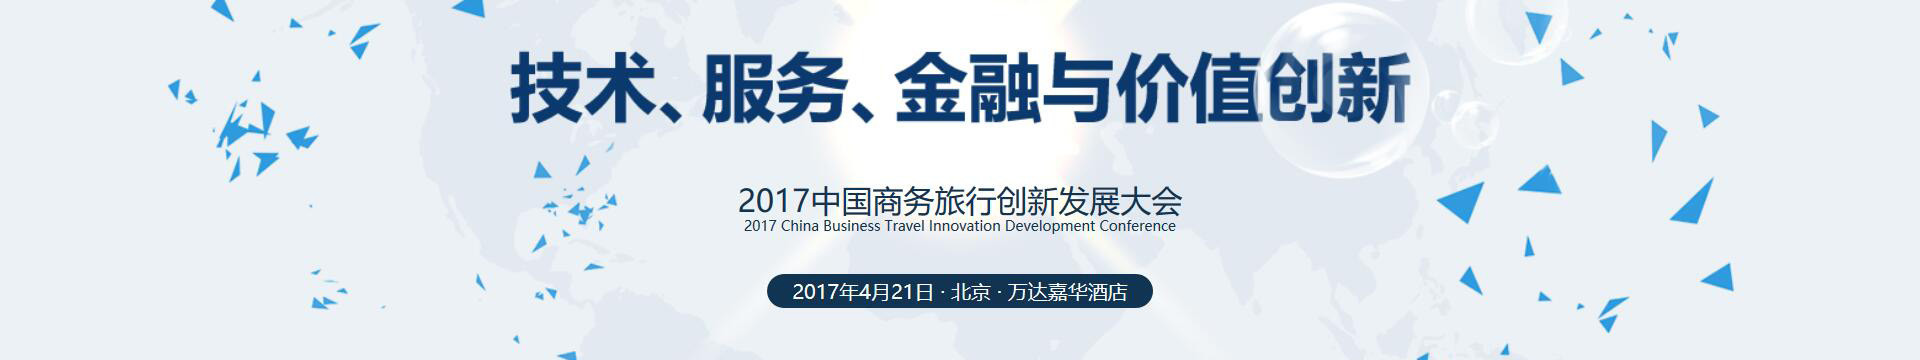 2017中国商务旅行创新发展大会